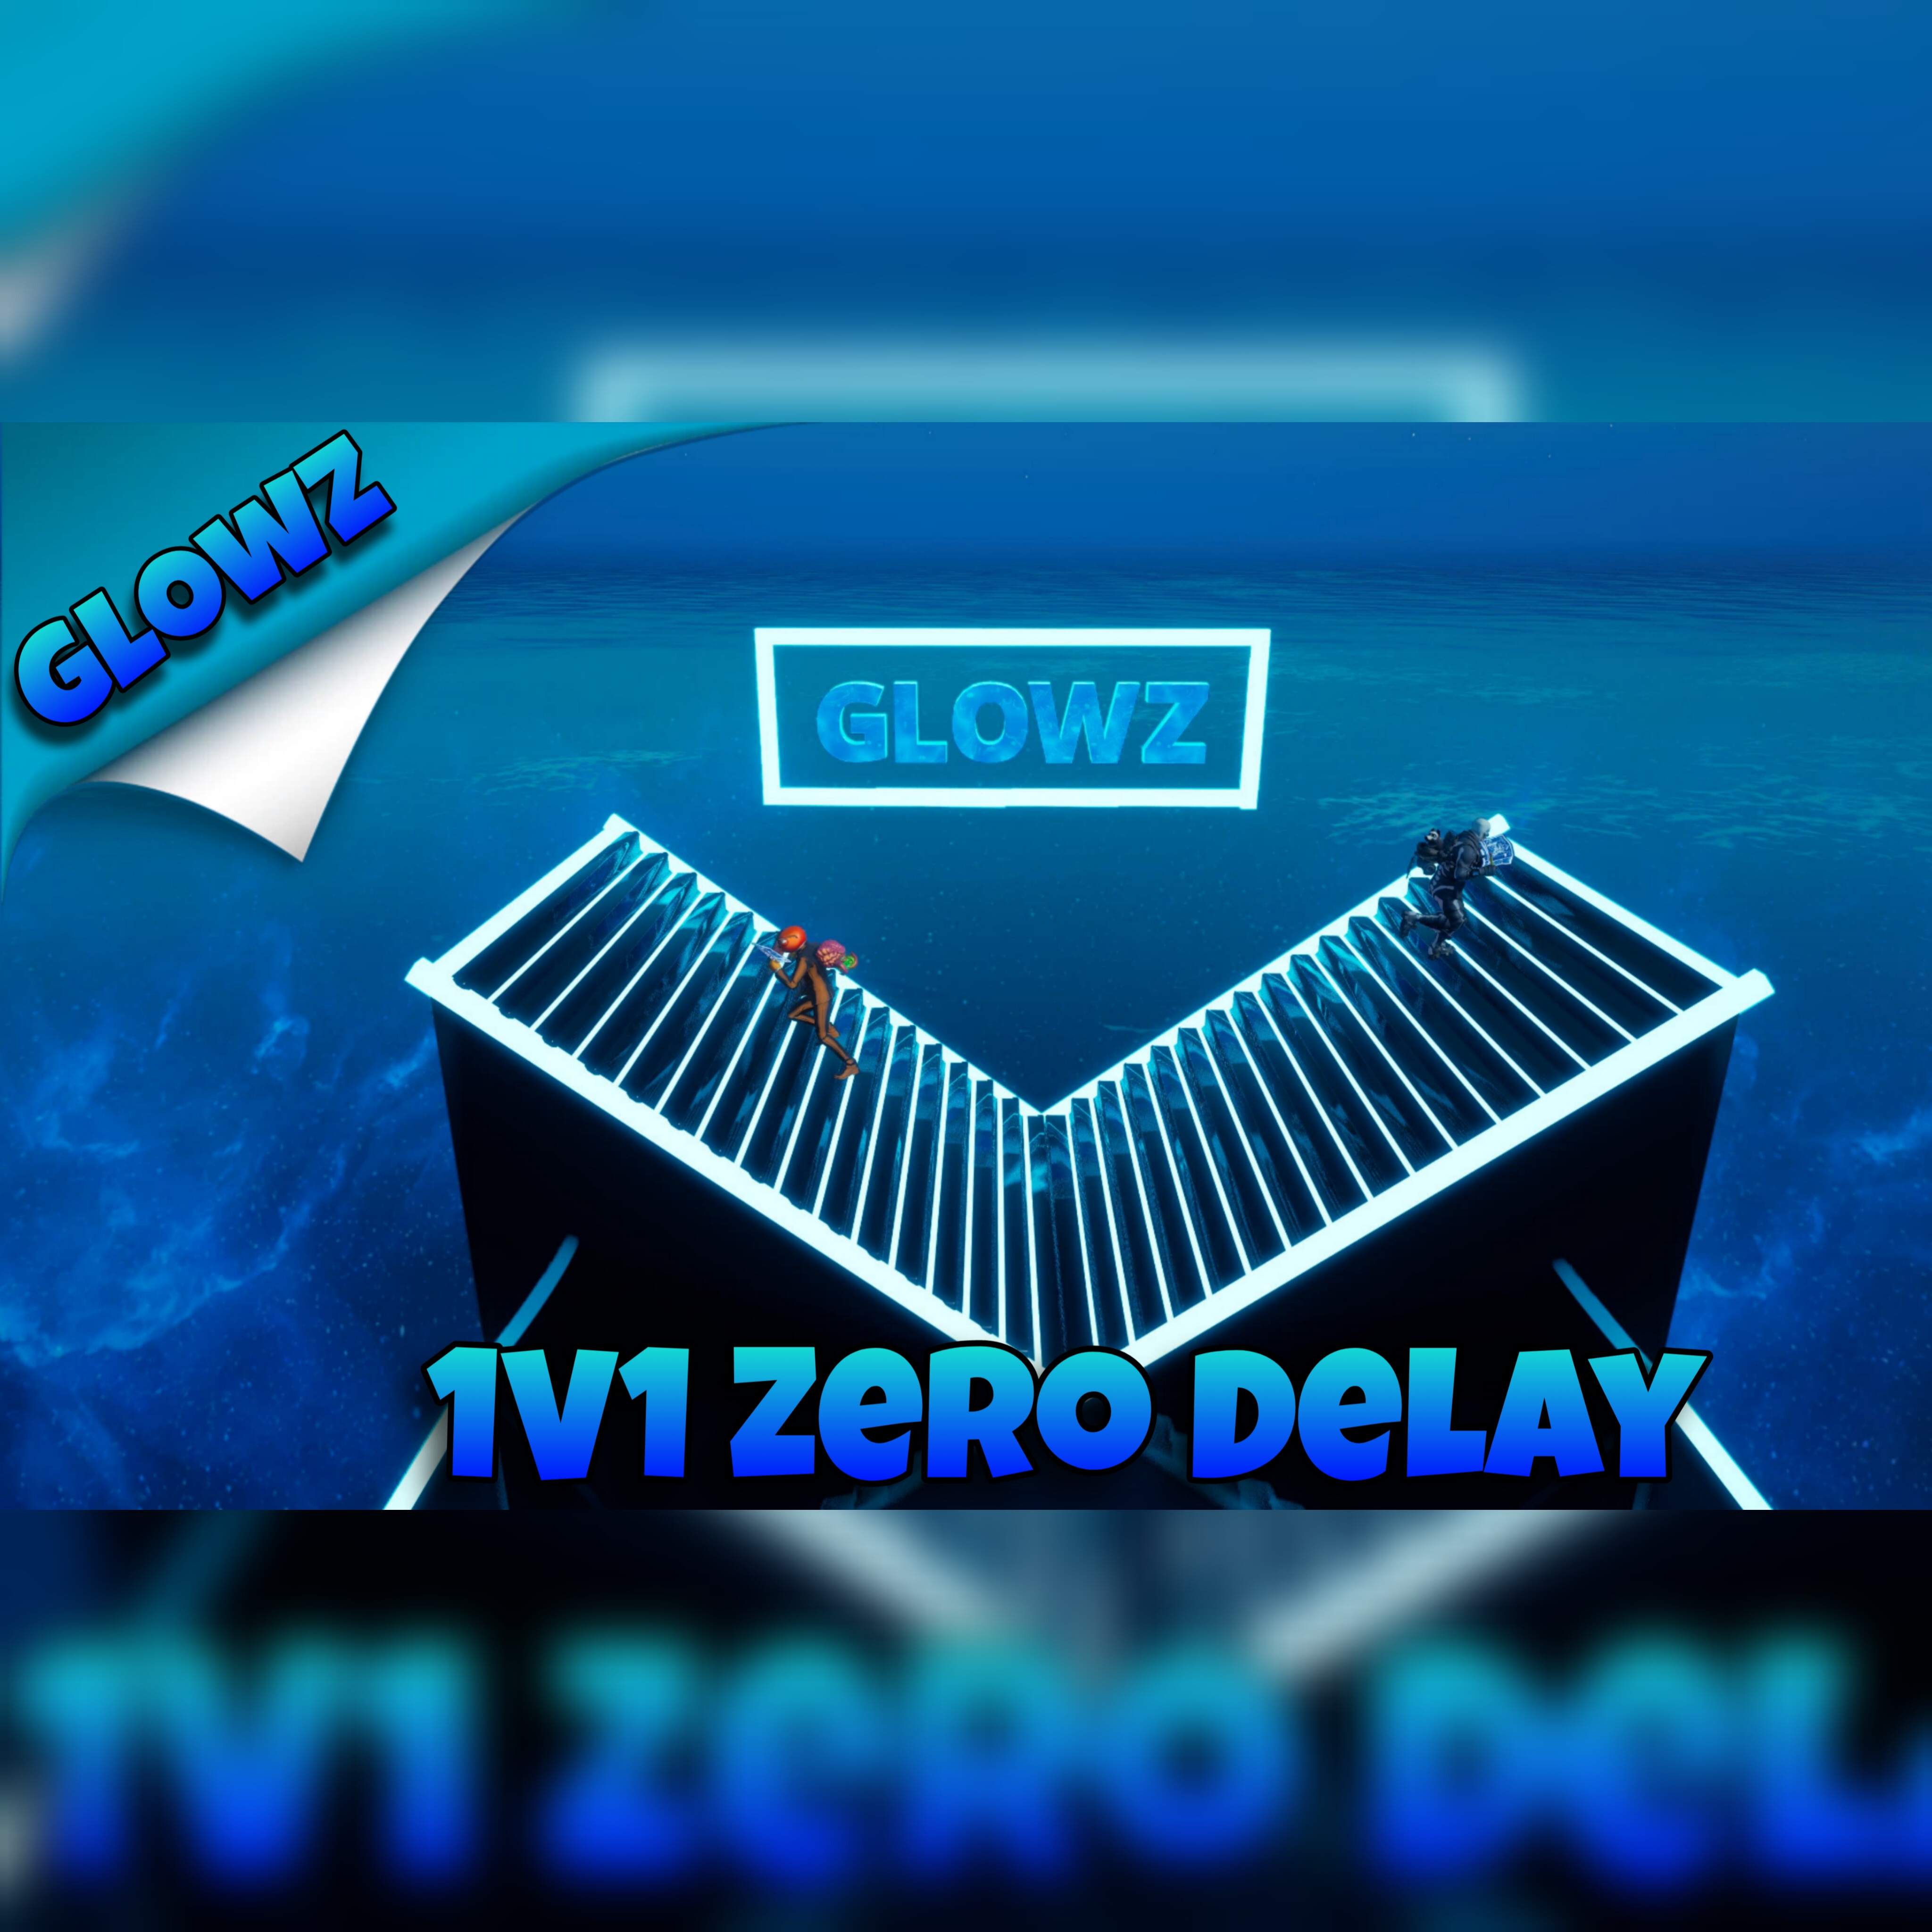 Glowz 1V1 Zero Delay image 2